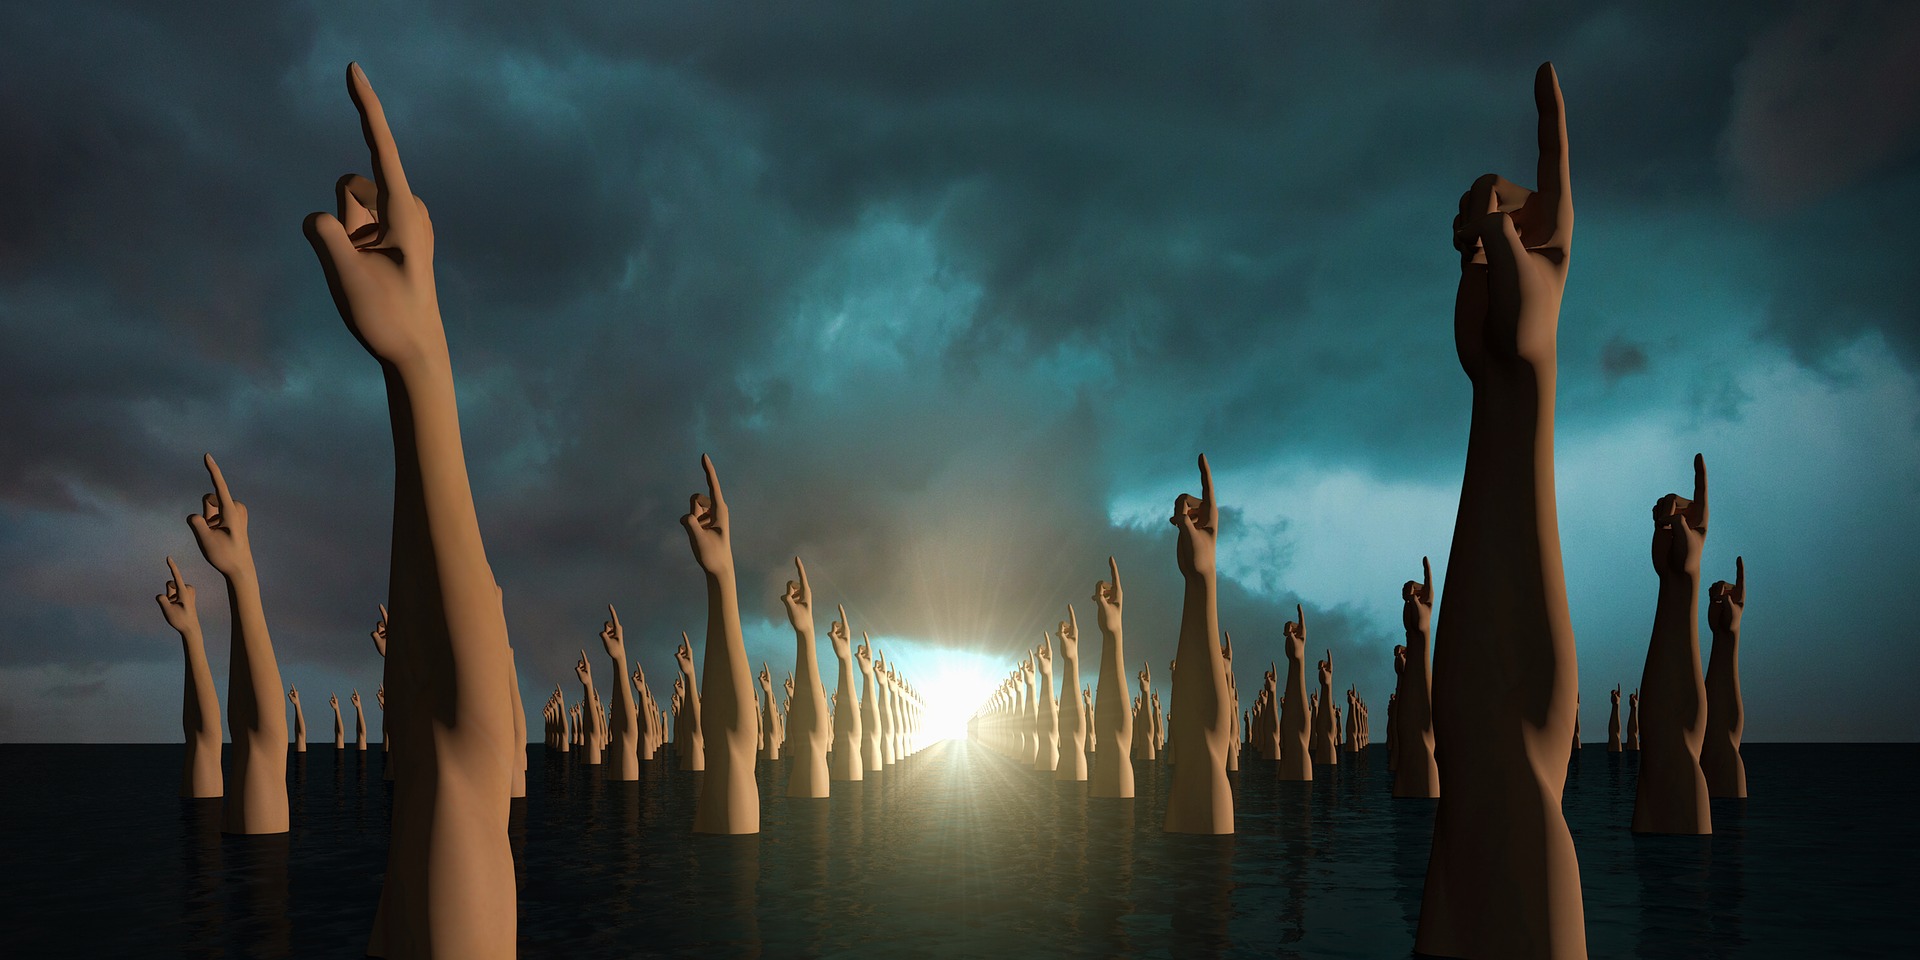 Un monton de esculturas de brazos con el dedo indice extendido sobre una tierra negra bajo un cielo nublado con un destello de luz al fondo